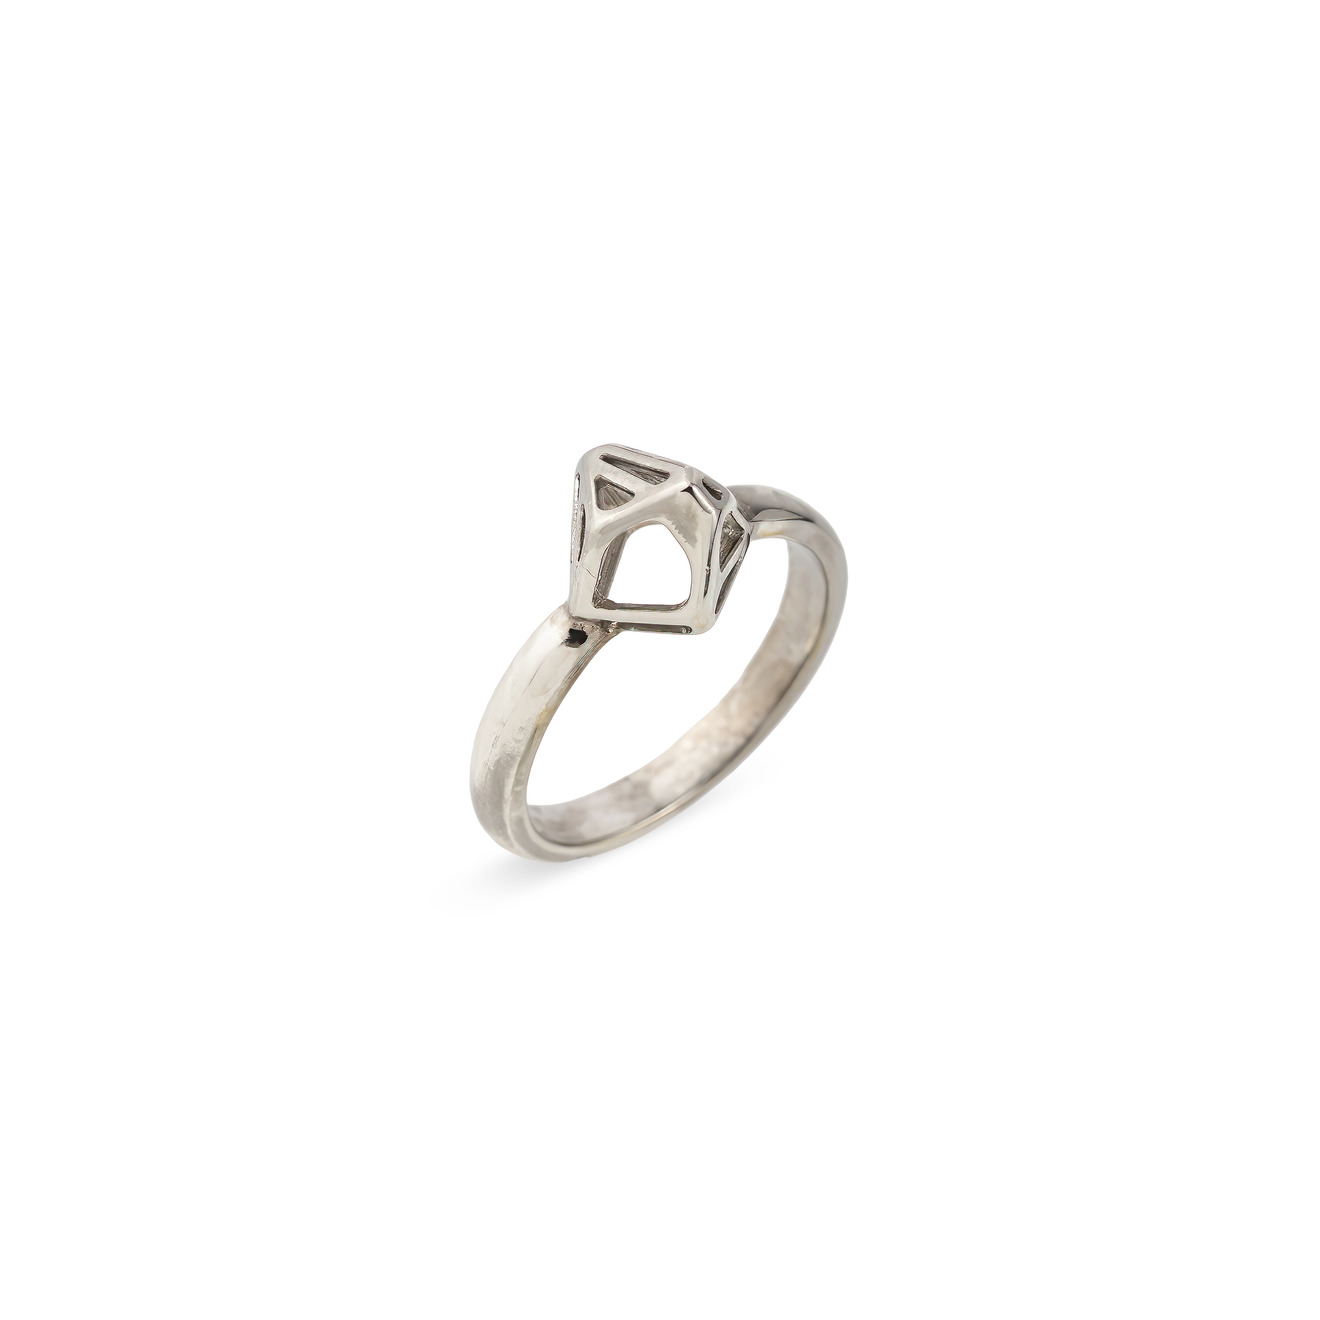 Vertigo Jewellery Lab Маленькое кольцо СELL MONO из серебра vertigo jewellery lab фаланговое кольцо из серебра essentials покрытое розовым золотом